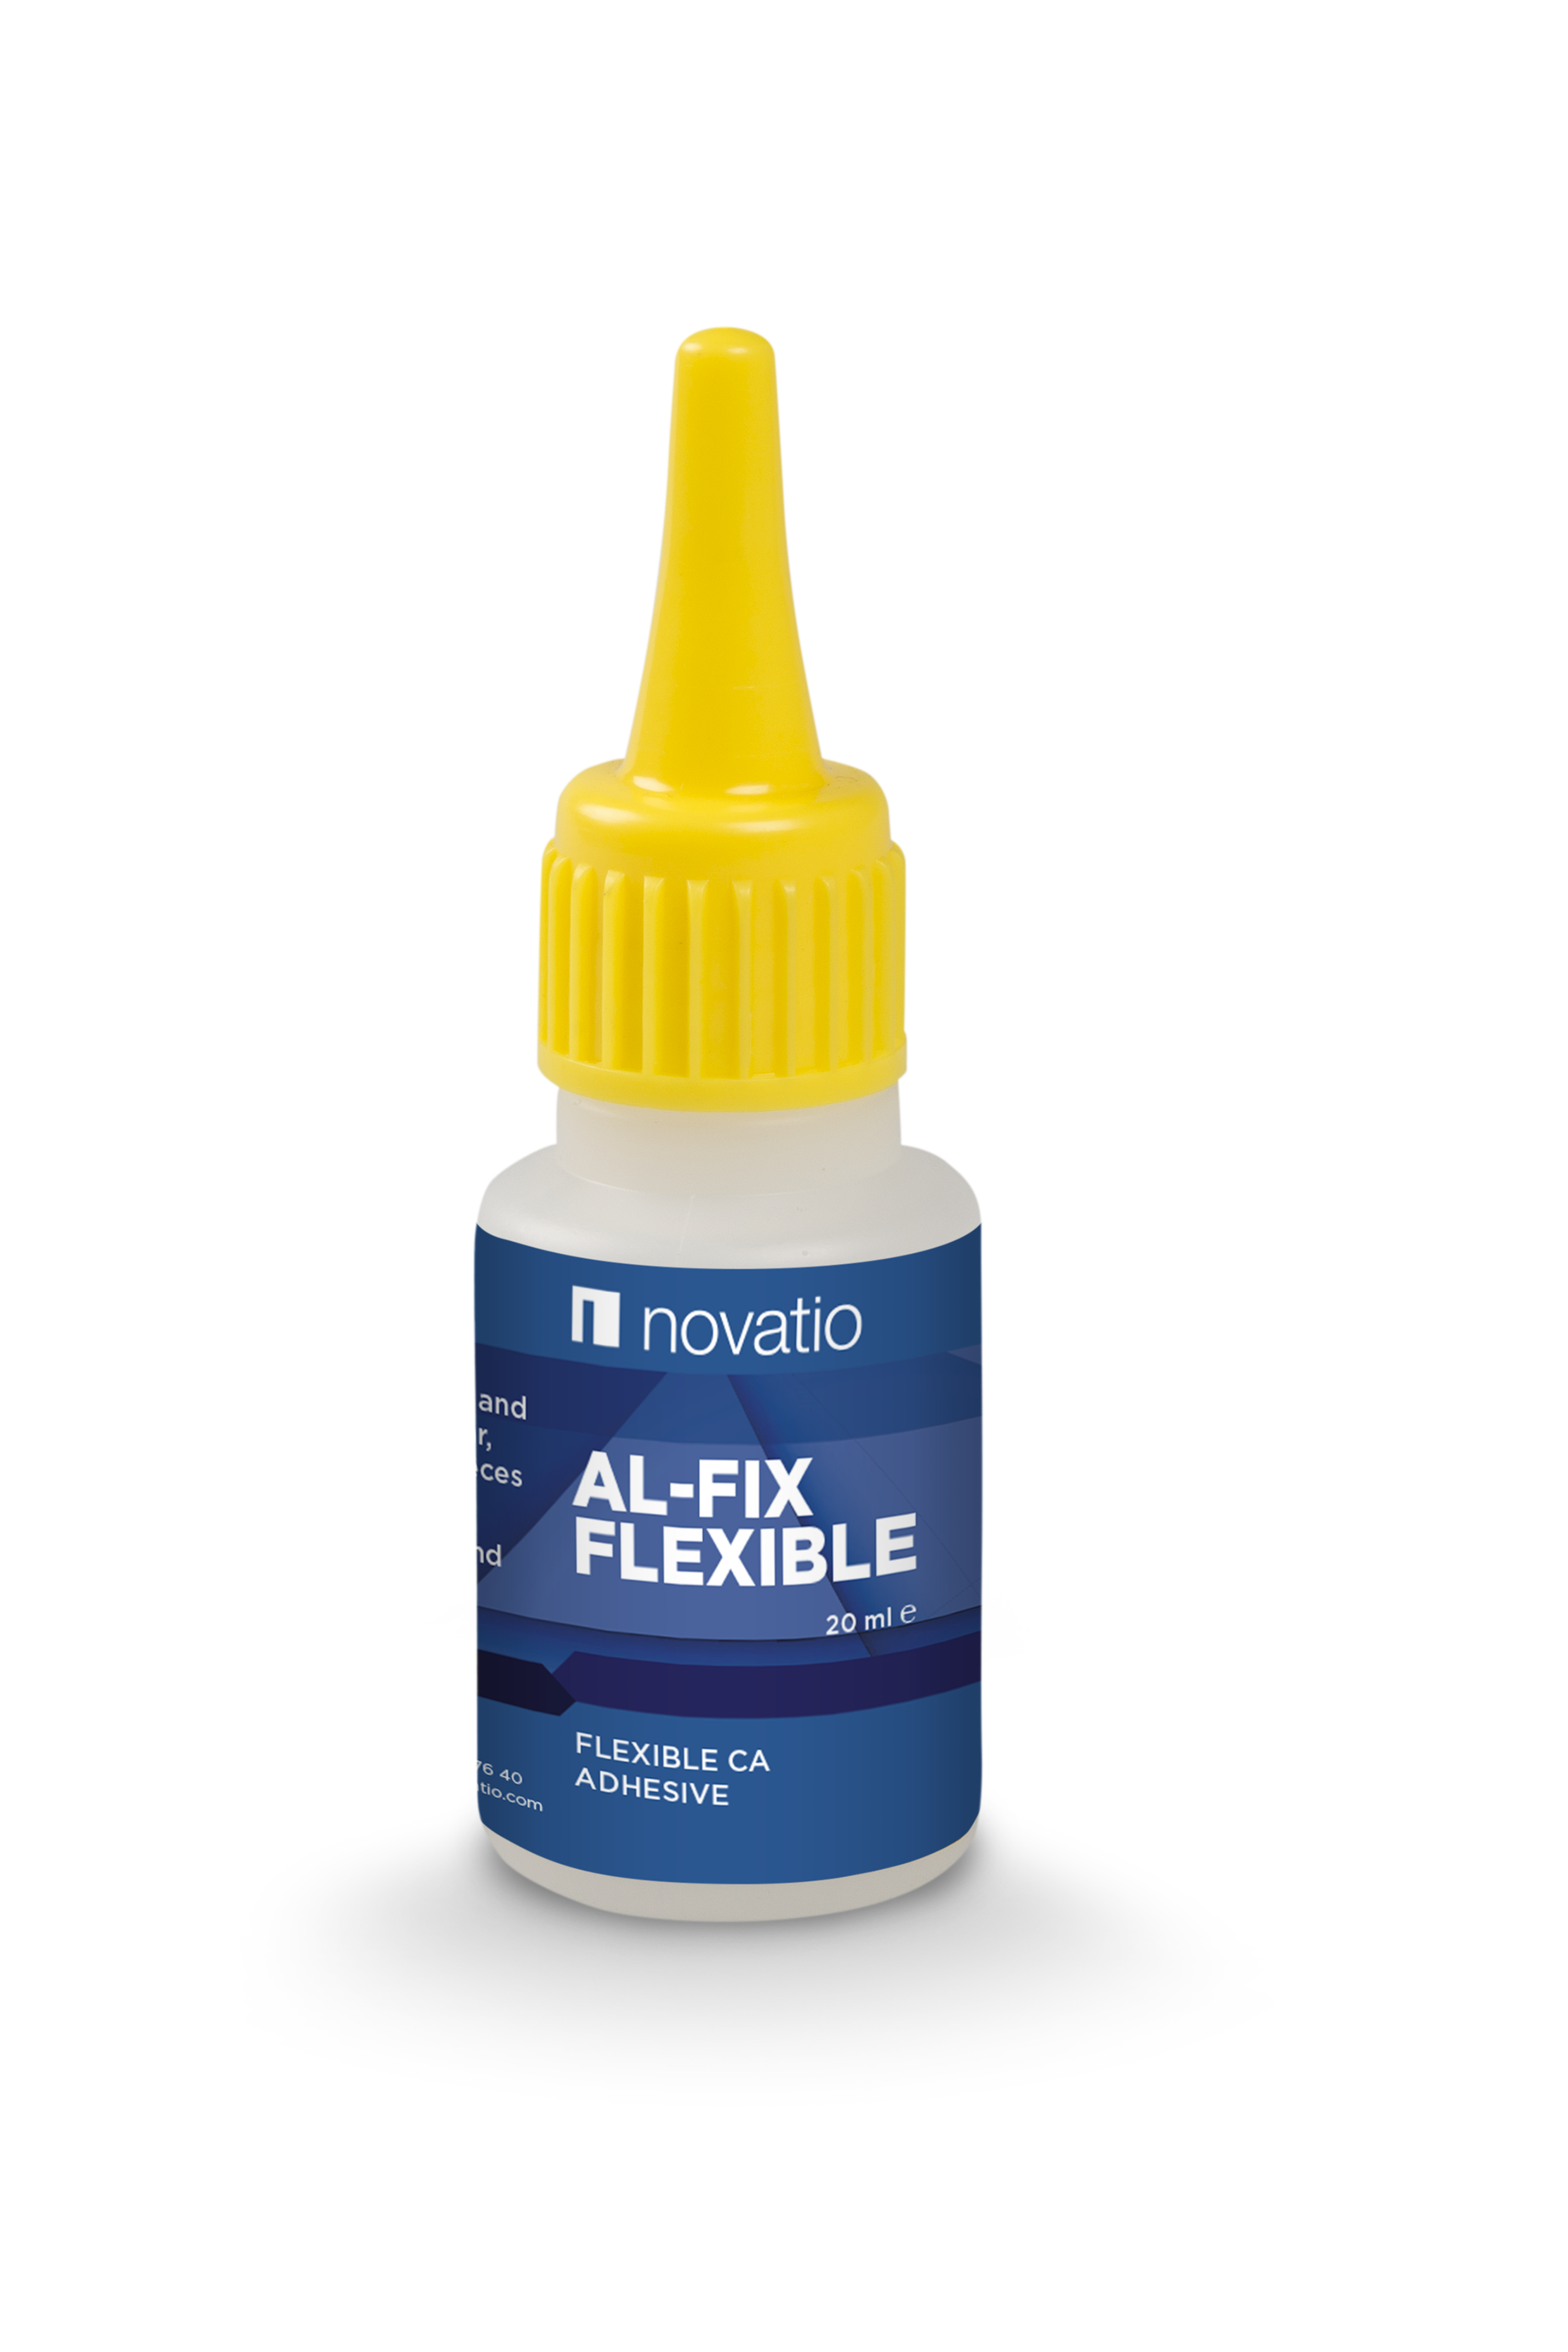 Al-Fix Flexible